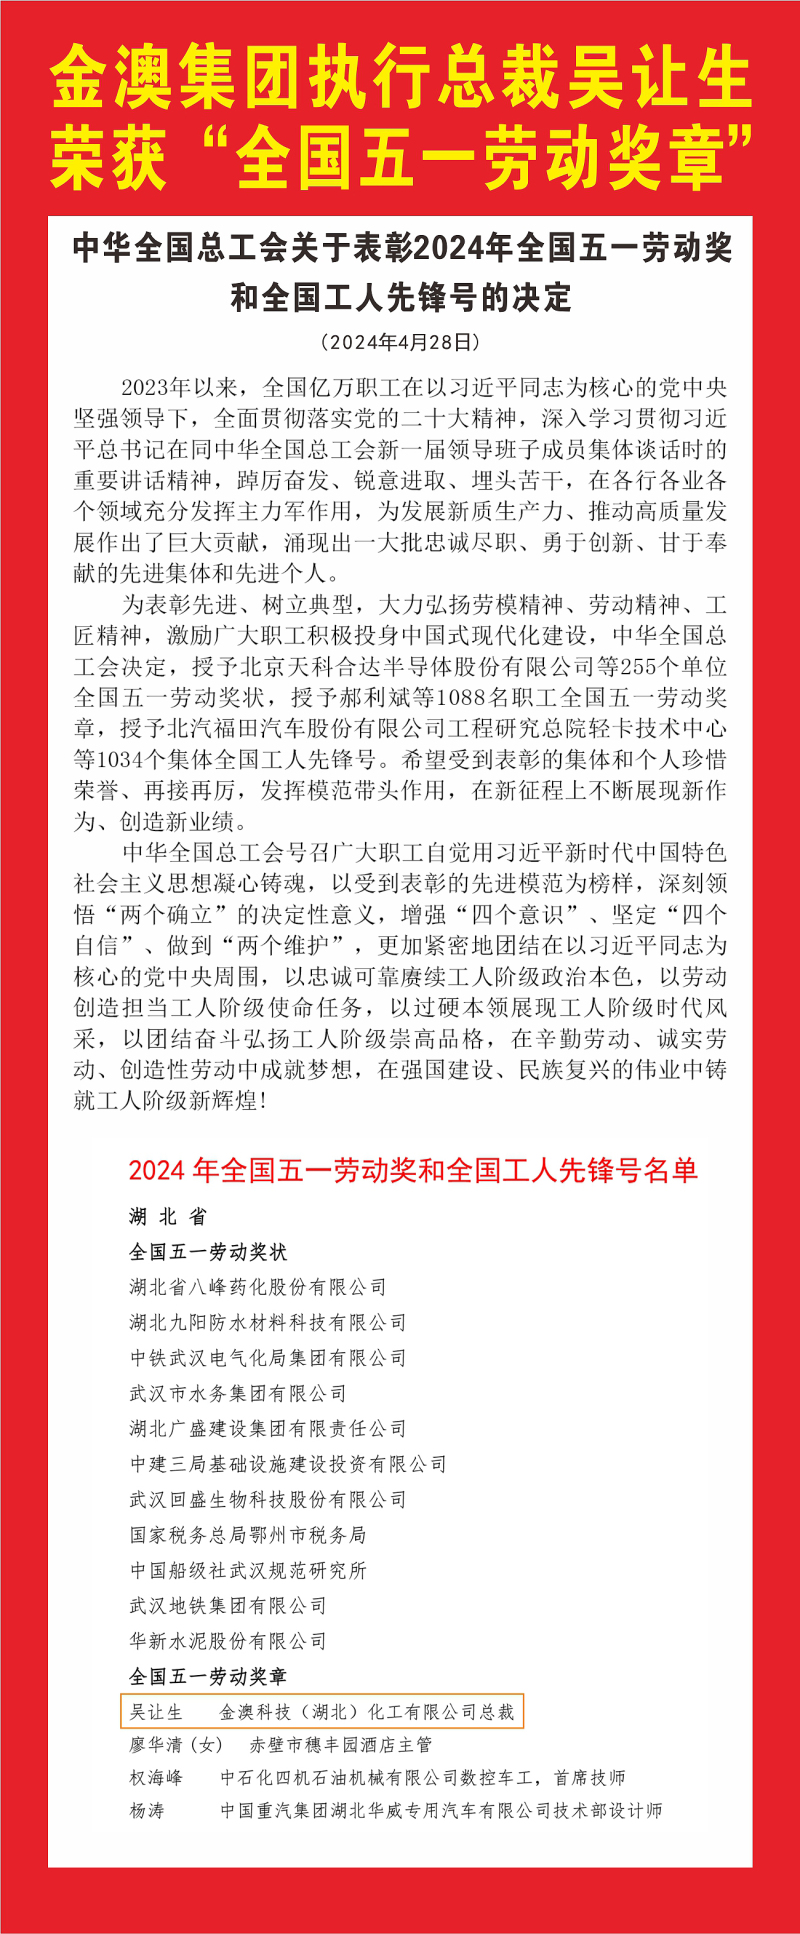 yh86银河国际集团执行总裁吴让生荣获“全国五一劳动奖章”